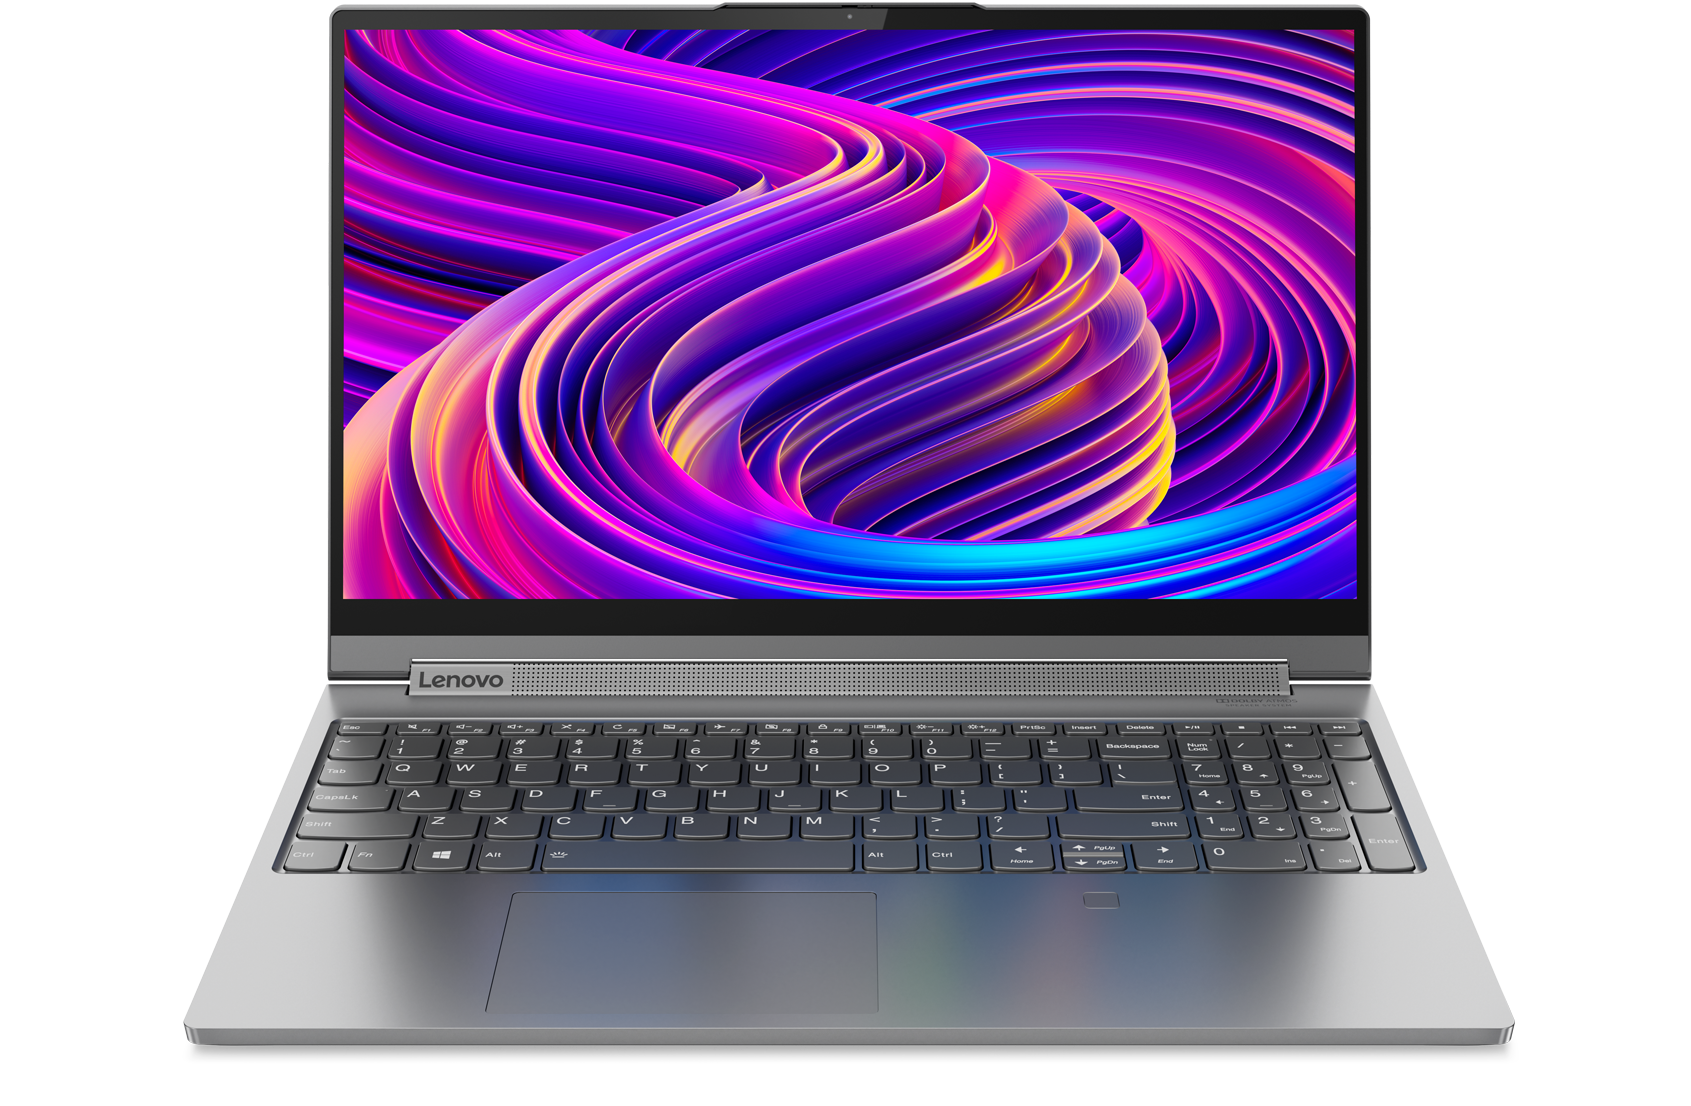 Yoga C940 (15) | Customize PC & Free Pro Upgrade | Lenovo US